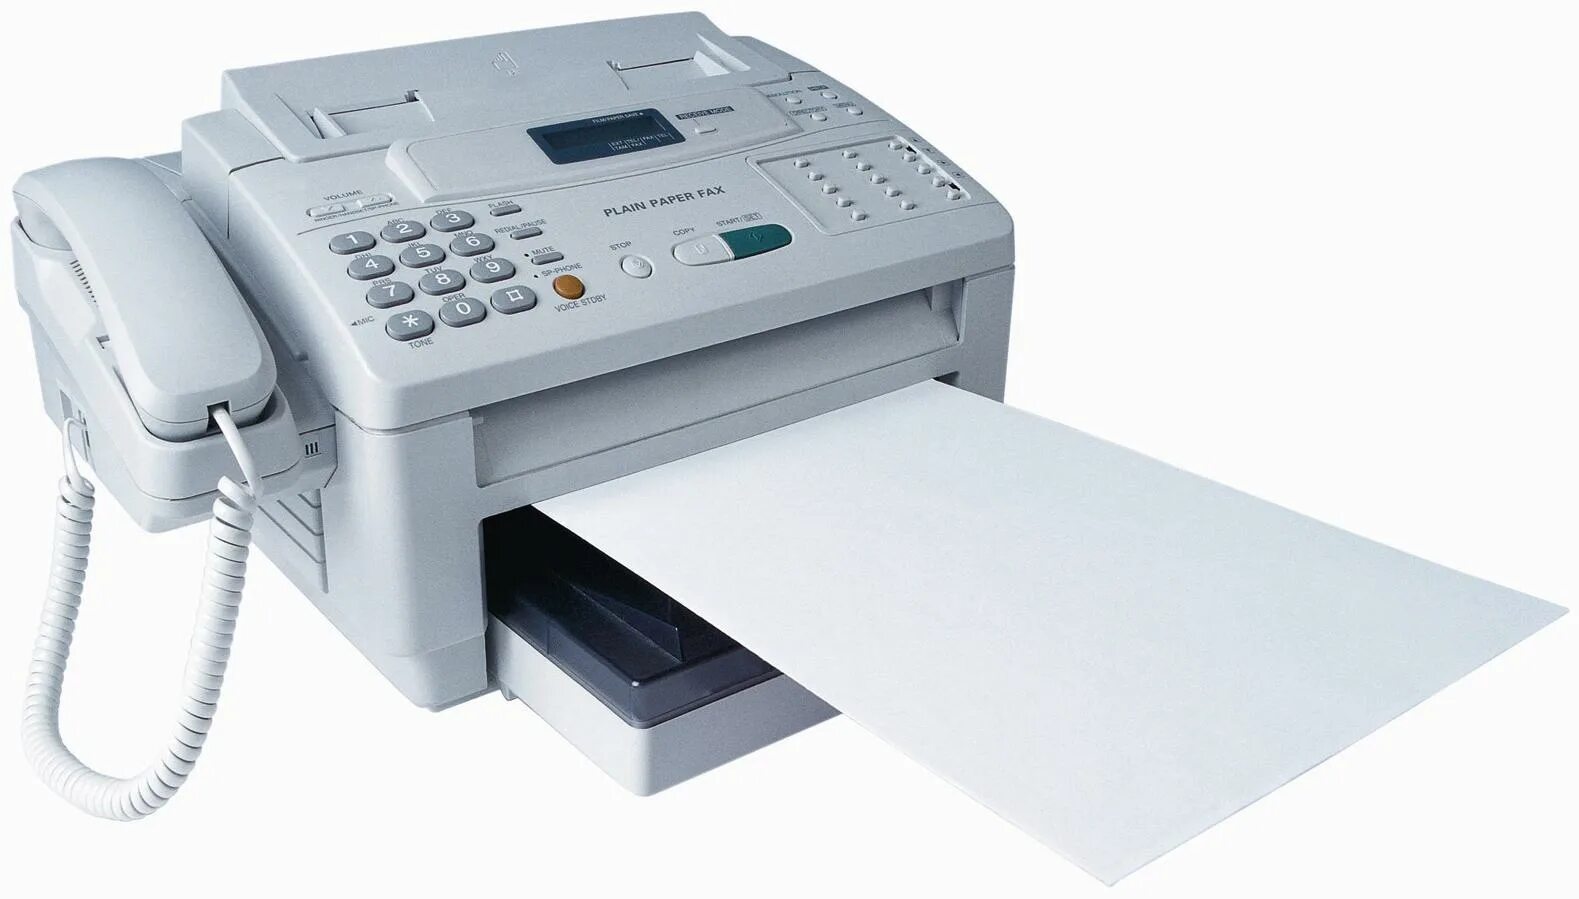 Факсимильный аппарат Panasonic KX-fc278ru. Факс 2023. Факсимильный аппарат Canon Fax 750. Факс 1990.